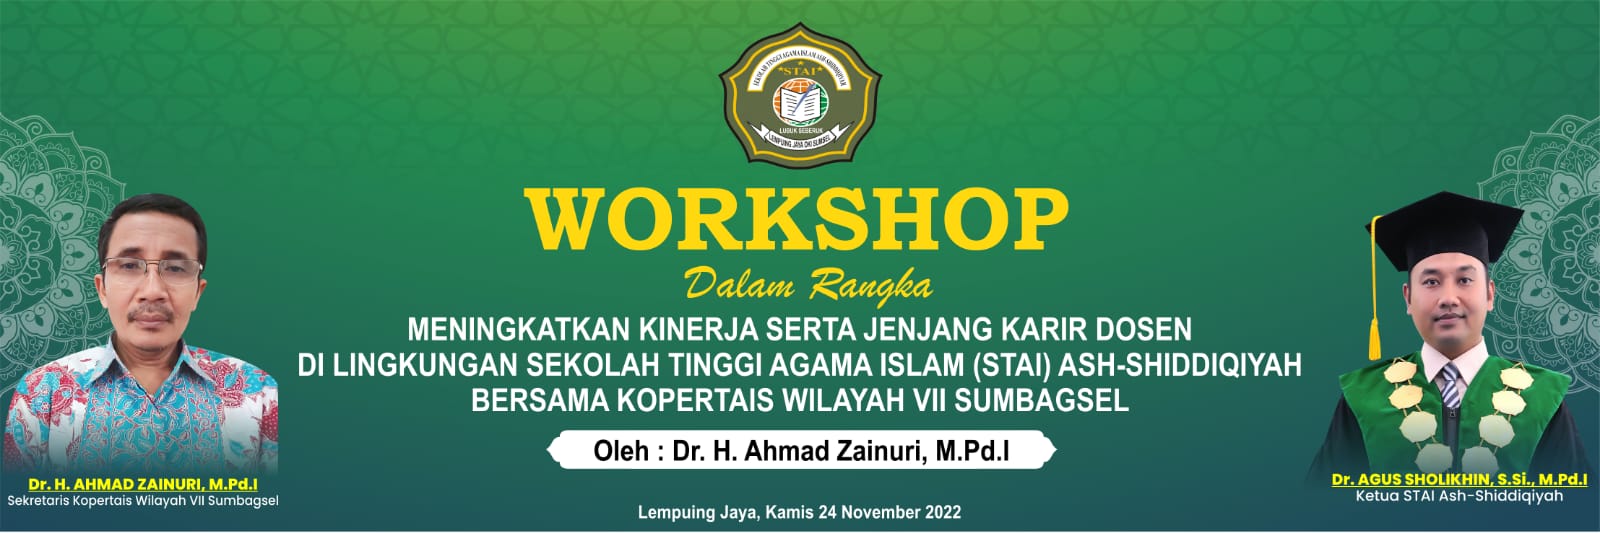 Workshop Meningkatan Kinerja Serta Jenjang Karier Dosen  Bersama Kopertais Wilayah VII Sumbagsel